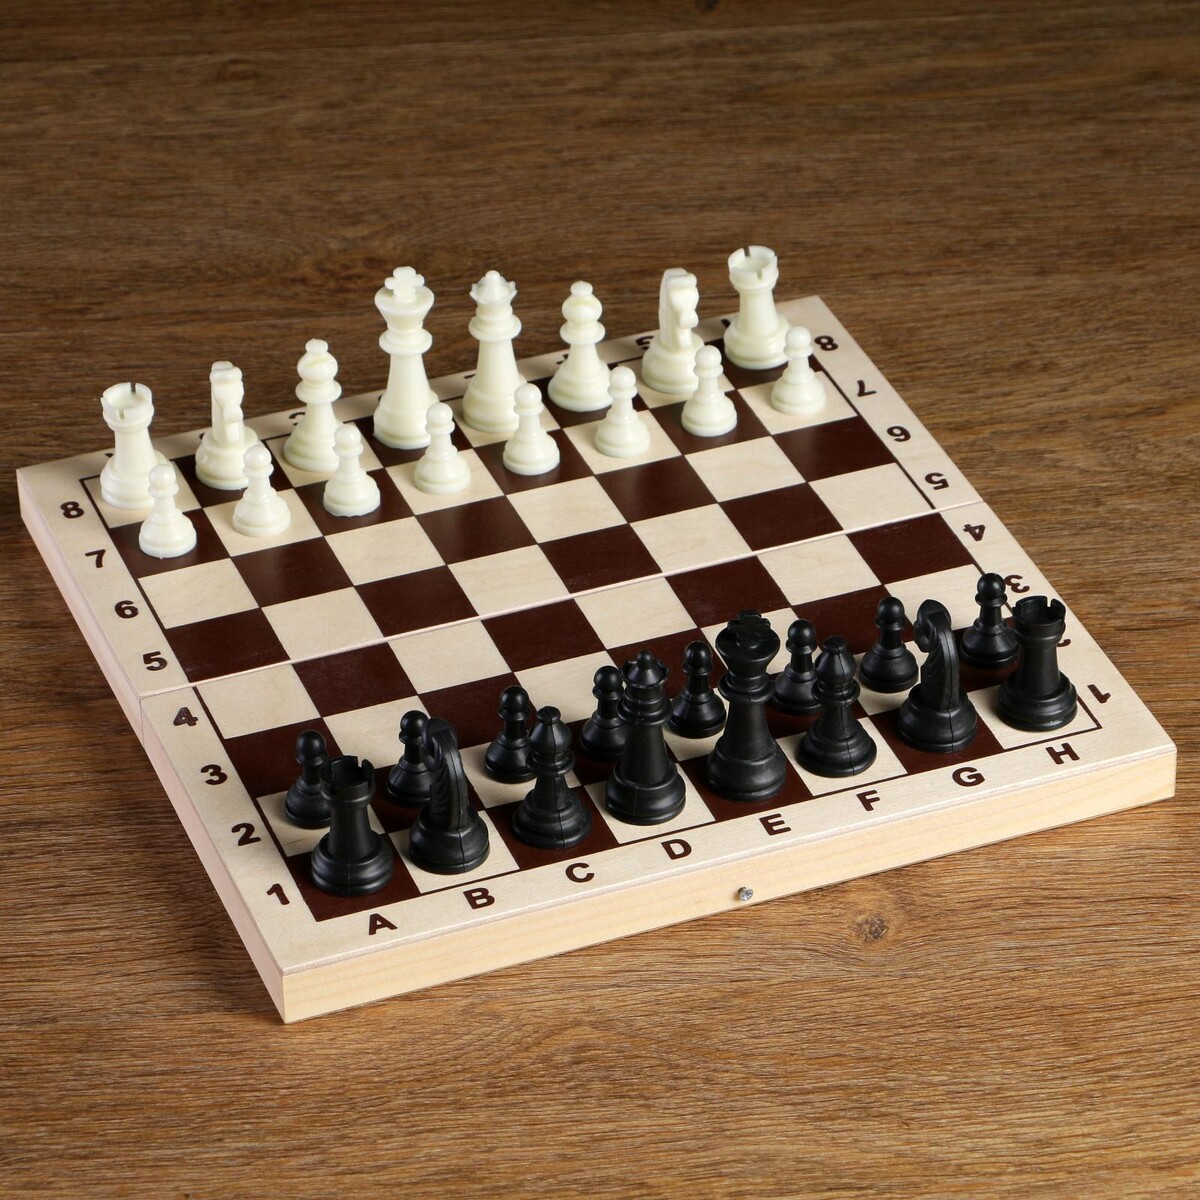 Шахматные фигуры, пластик, король h-6.2 см, пешка h-3 см имельда и король гоблинов